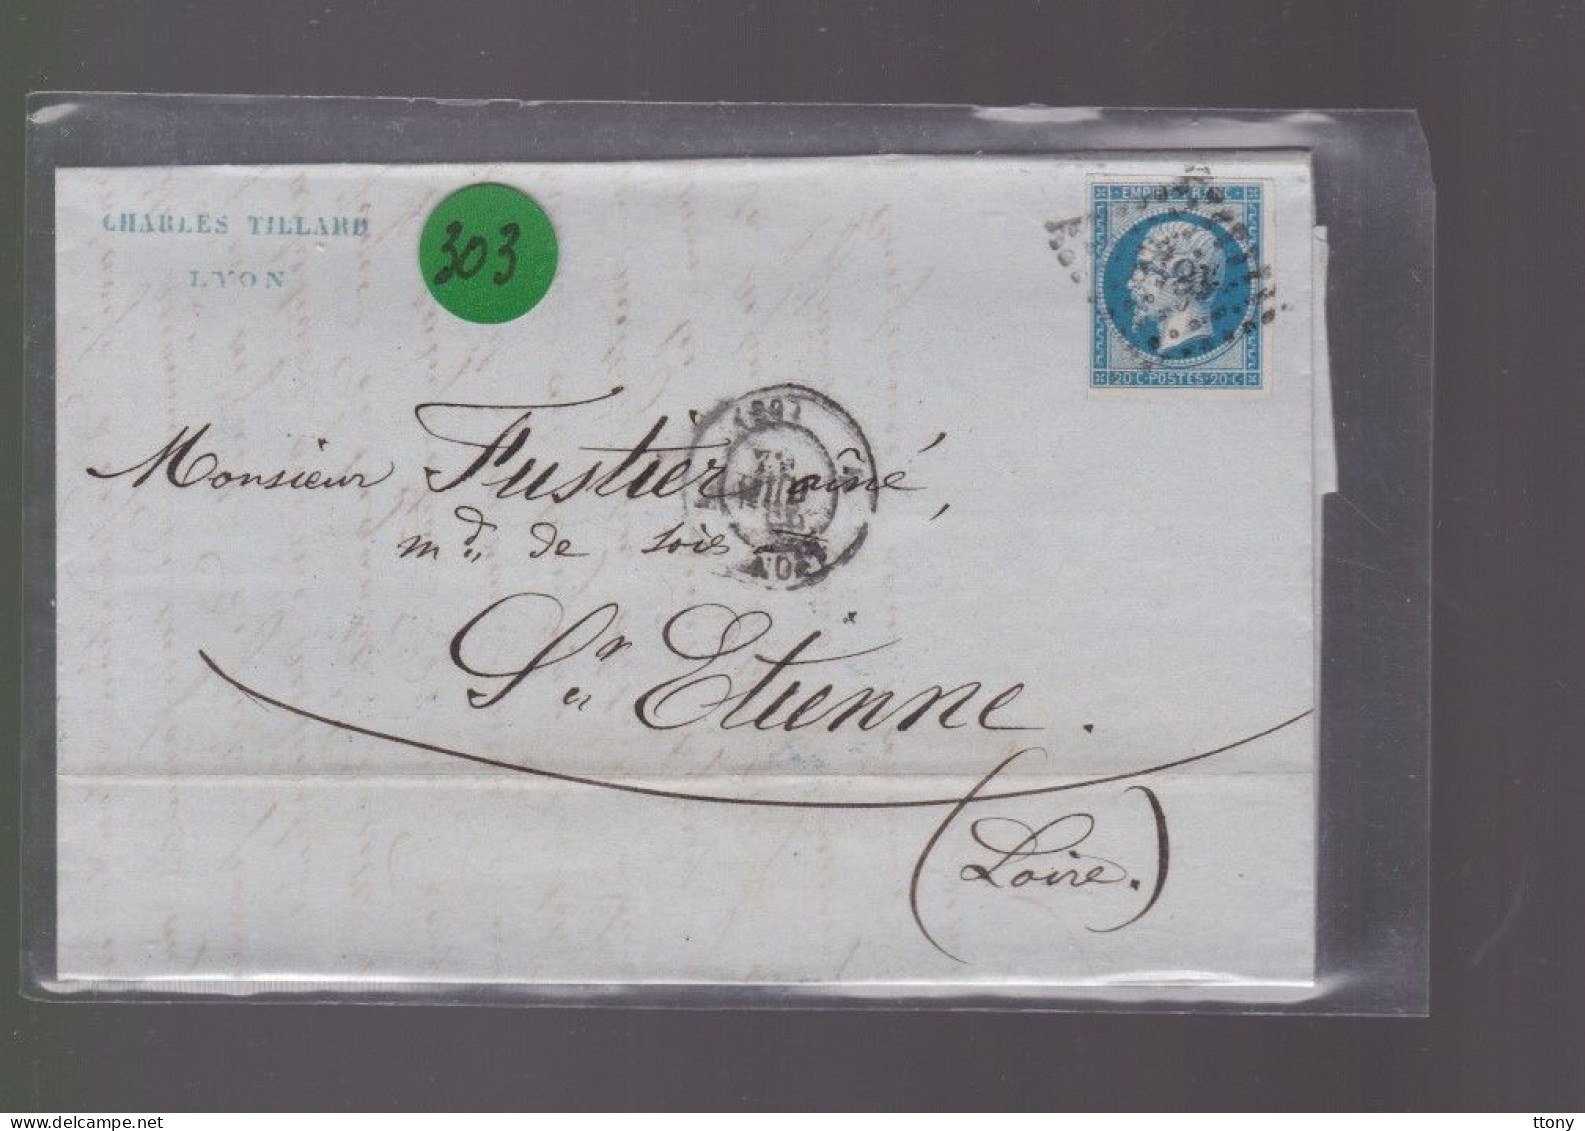 Un  Timbre  Napoléon III N° 14     20 C Bleu  Lettre Cachet Lyon    1862   Destination  St -Etienne - 1862 Napoleone III